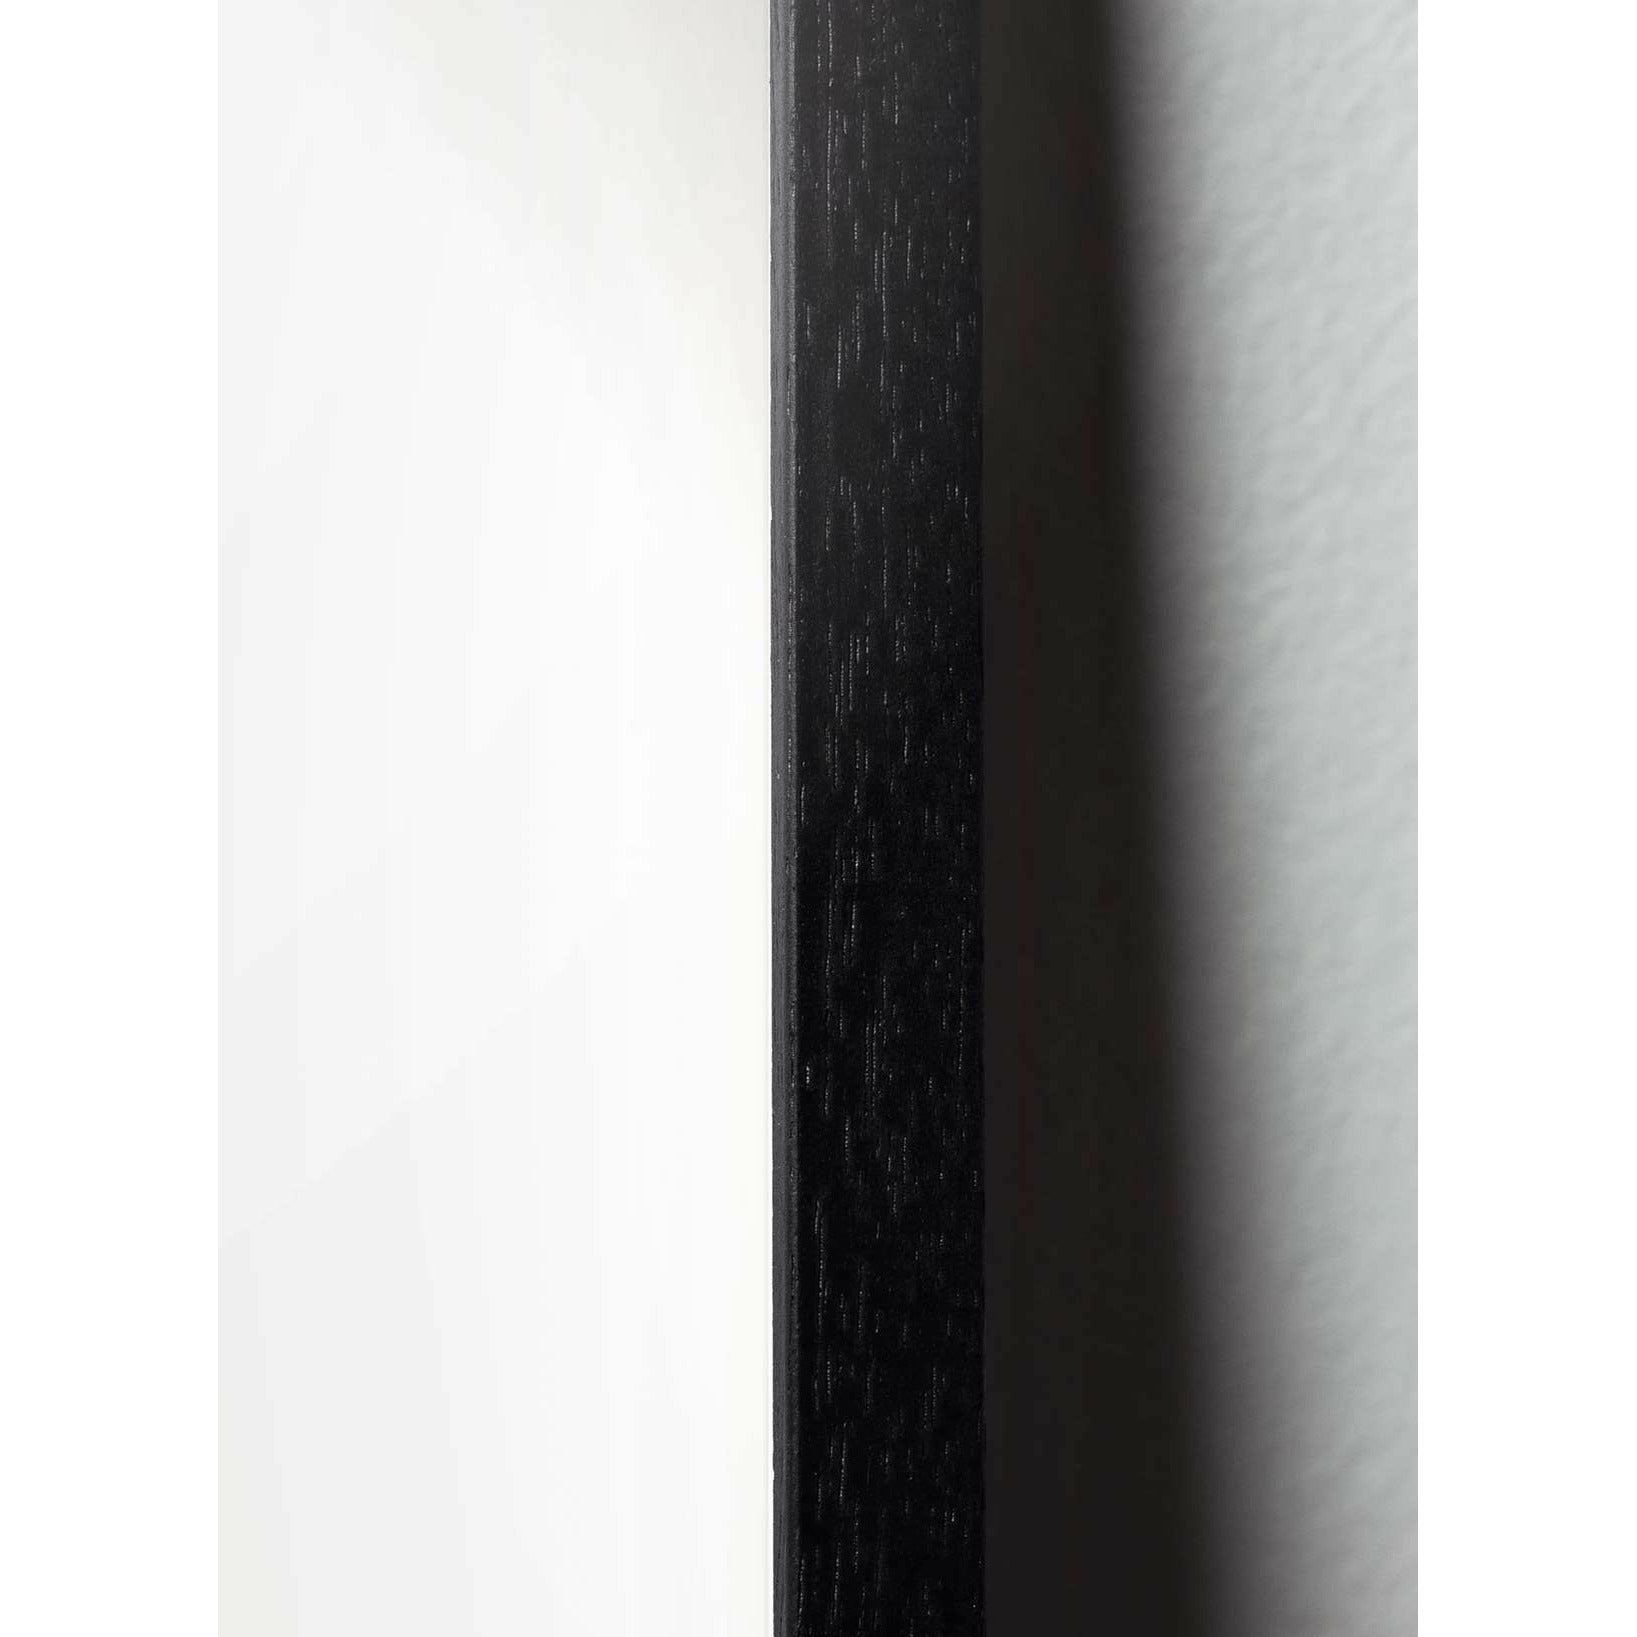 Pomysły plakat linii jaj, rama w czarnym lakierowanym drewnie 70x100 cm, białe tło